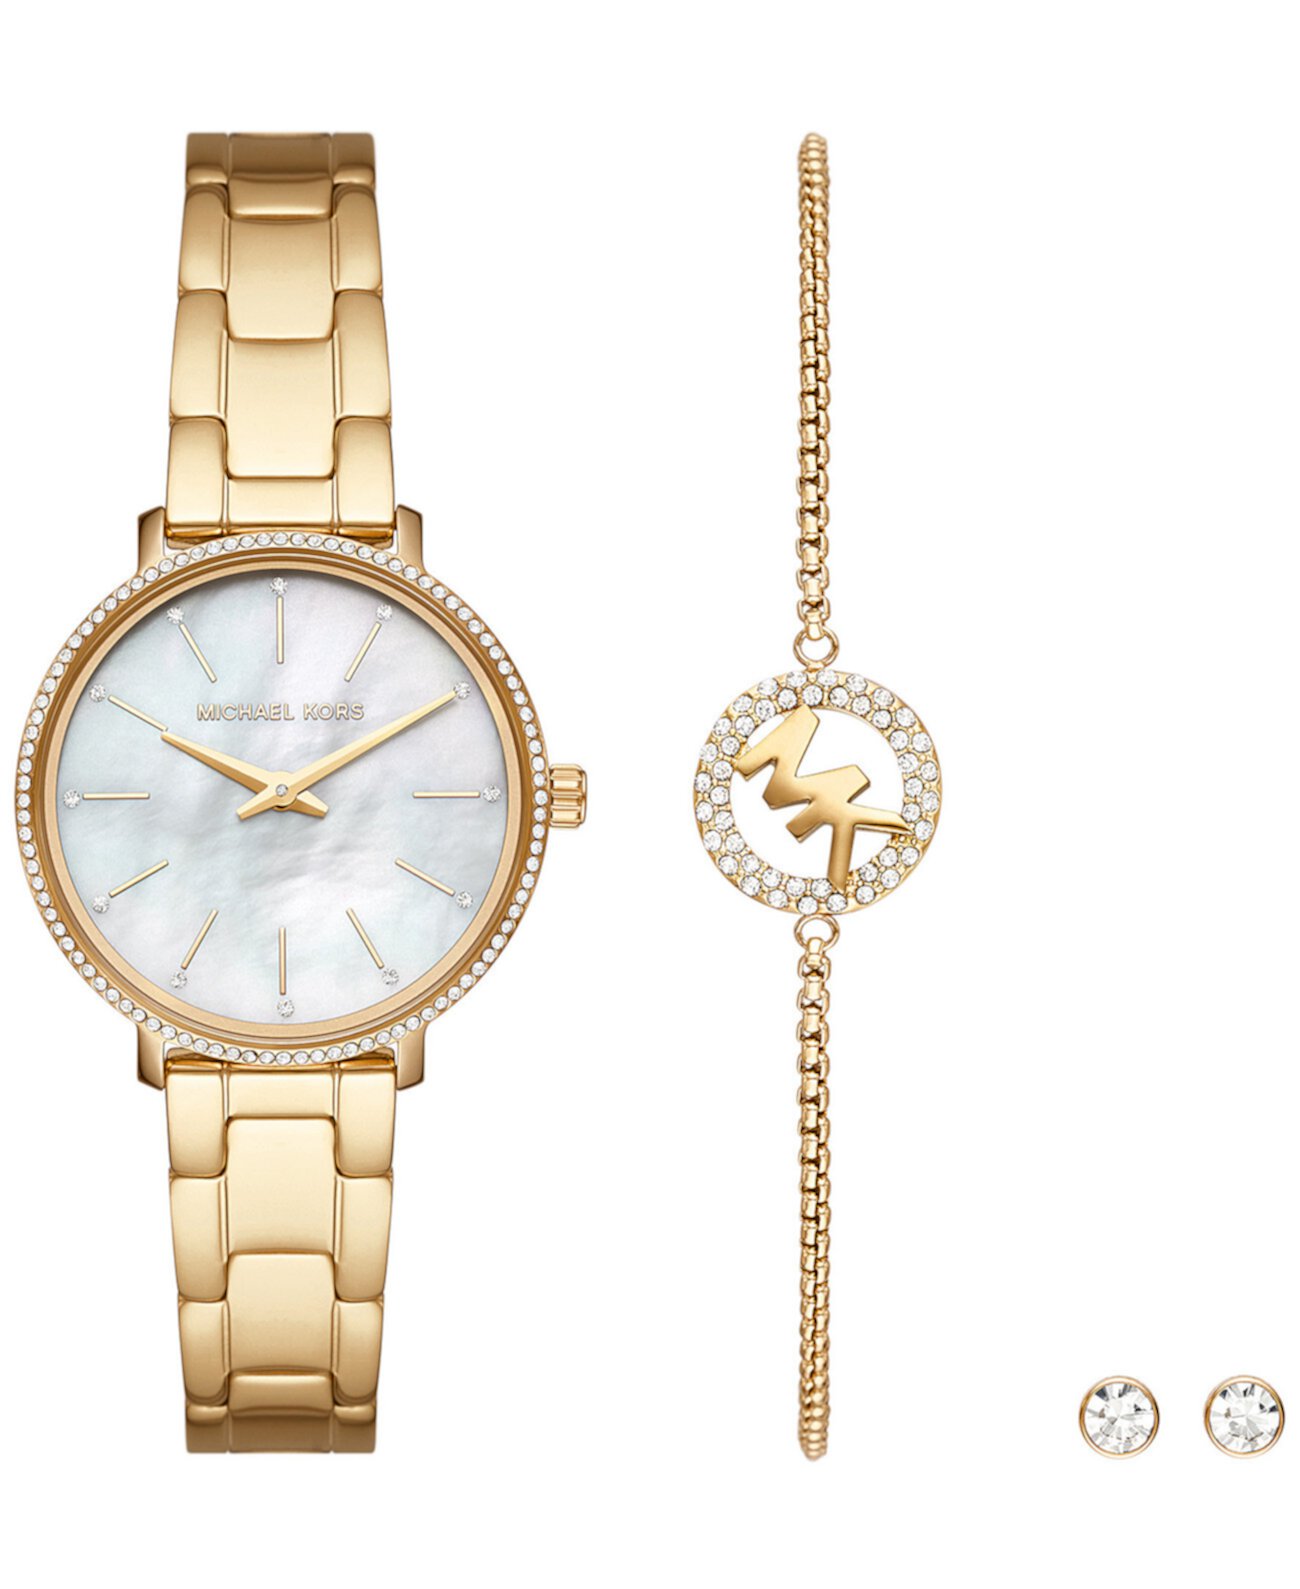 Женские часы Pyper с золотым браслетом из нержавеющей стали с двумя стрелками, 32 мм, набор с серьгами, 3 предмета Michael Kors